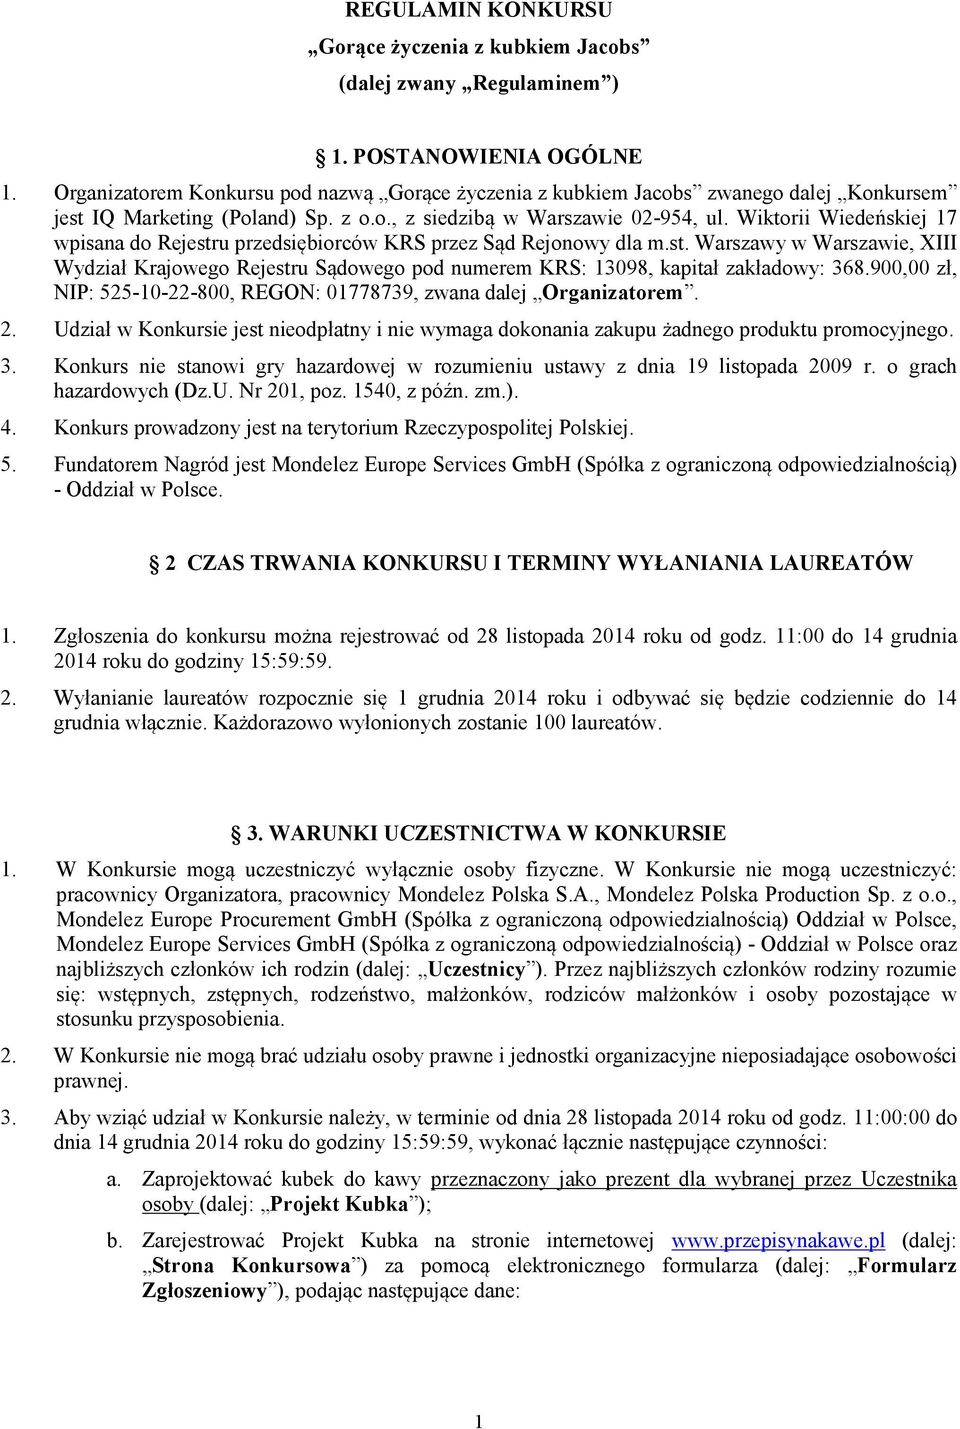 Wiktorii Wiedeńskiej 17 wpisana do Rejestru przedsiębiorców KRS przez Sąd Rejonowy dla m.st. Warszawy w Warszawie, XIII Wydział Krajowego Rejestru Sądowego pod numerem KRS: 13098, kapitał zakładowy: 368.